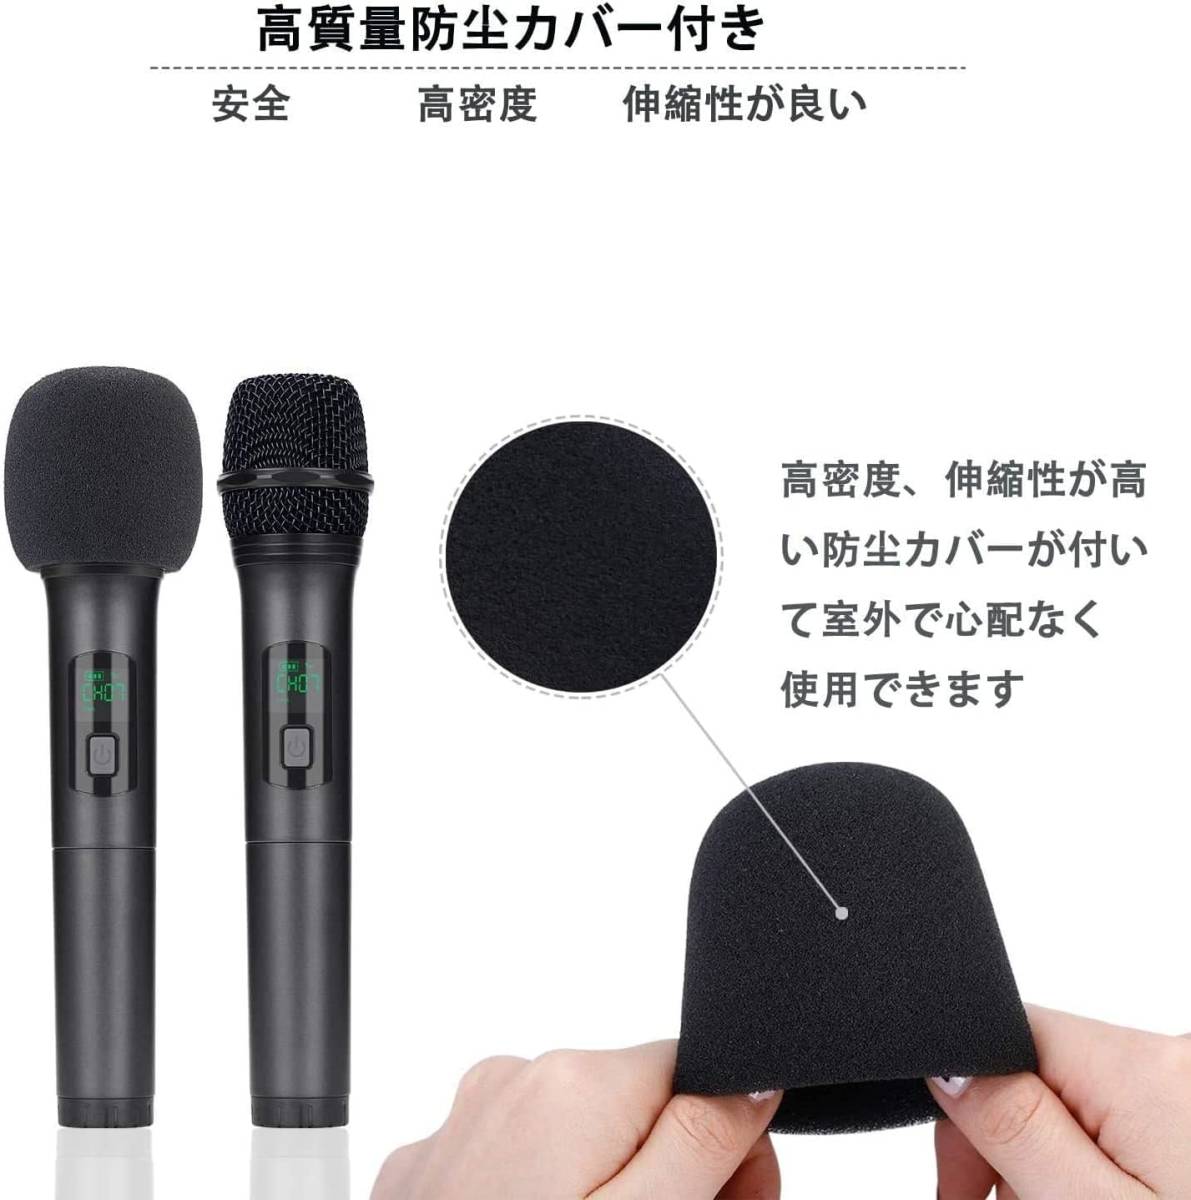 Kithouse K380Aワイヤレスマイク Bluetoothカラオケマイク 2本セット LEDディスプレイ電池式 UHF 10チャンネル 日本語取扱書付き_画像5